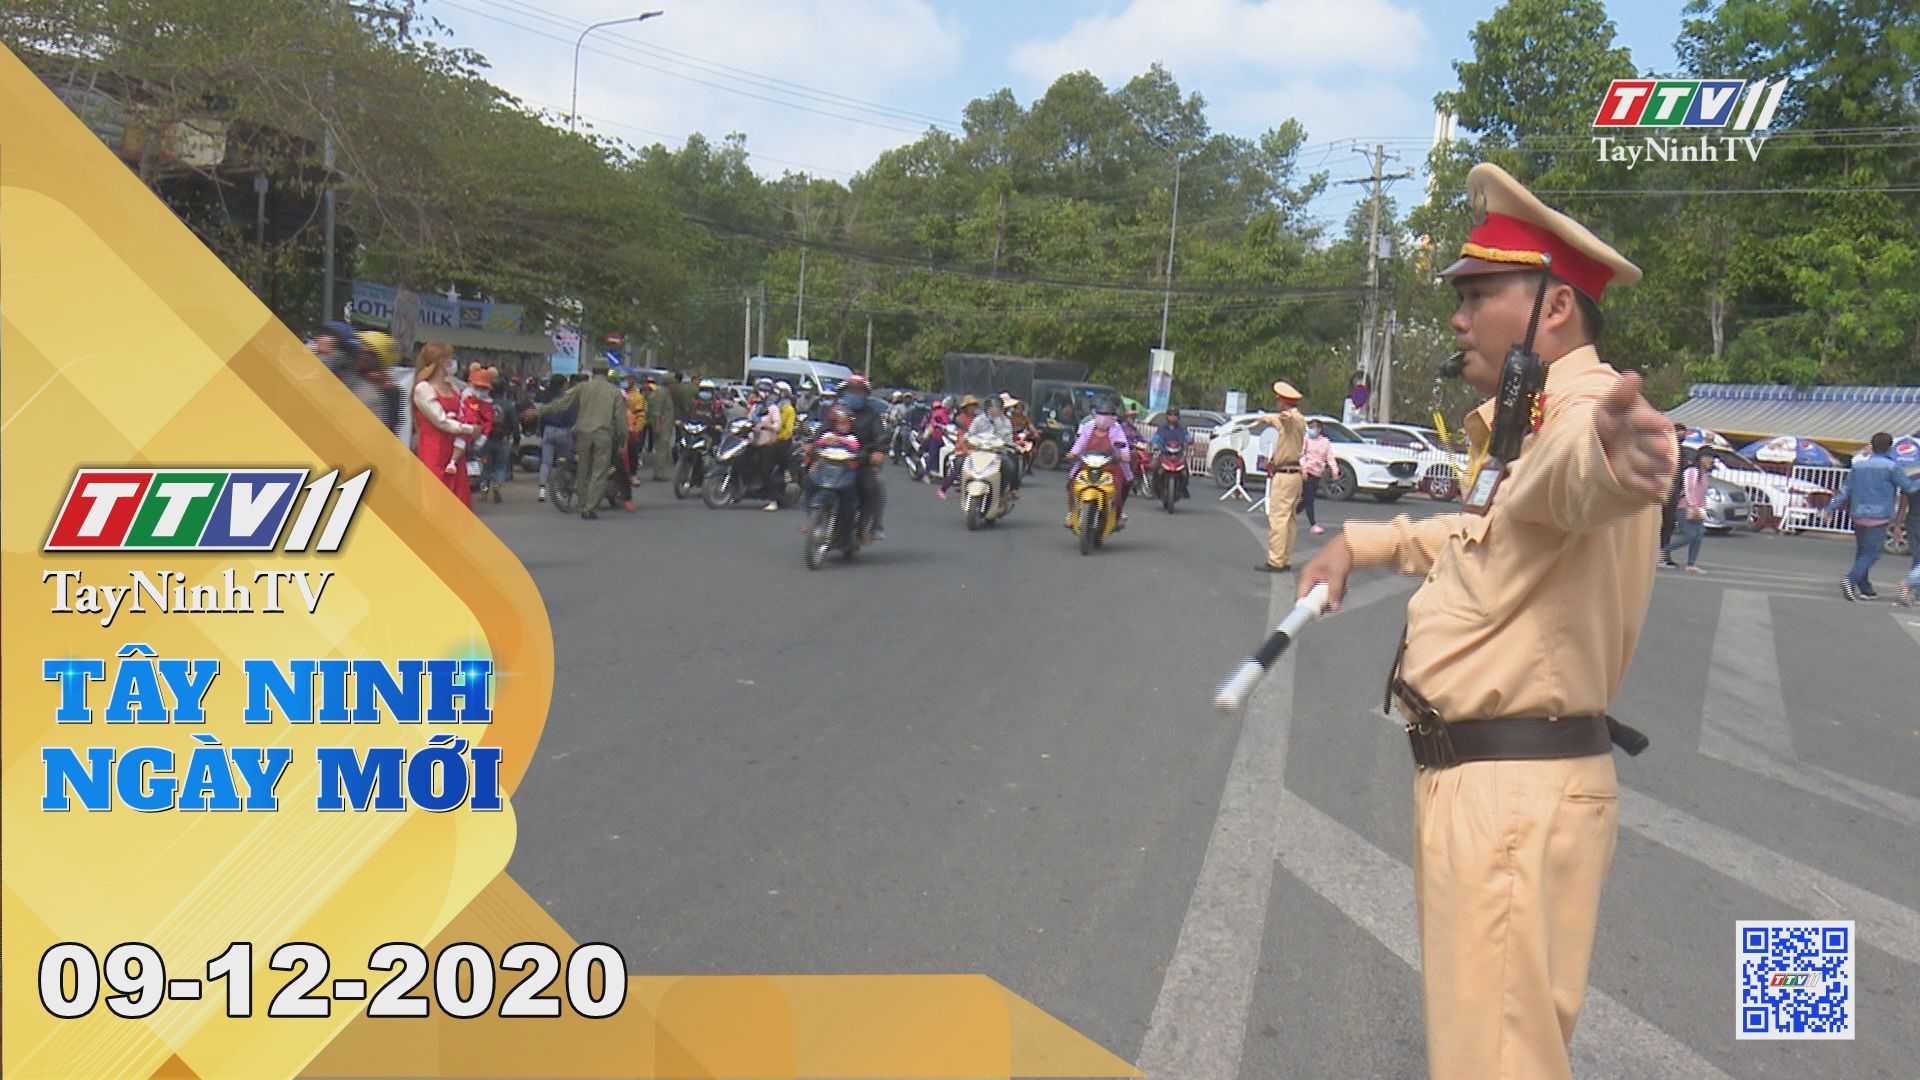 Tây Ninh Ngày Mới 09-12-2020 | Tin tức hôm nay | TayNinhTV